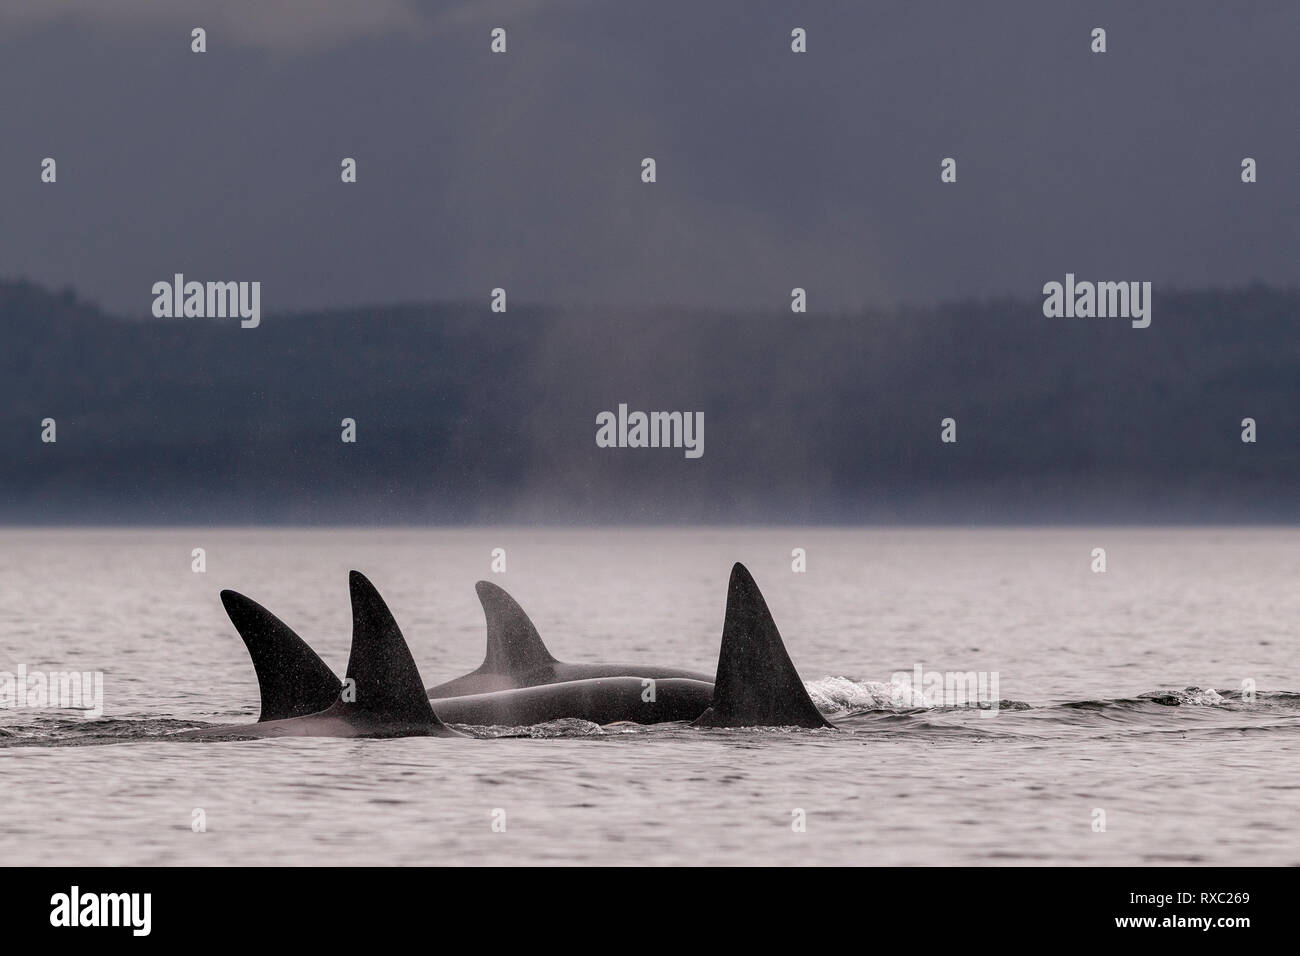 Un grupo familiar de orcas residentes del norte (orcas asesinas, orcinus orca) que navega a lo largo del Estrecho de la Reina Charlotte con la Isla Malcolm, cerca de Lizard Point, Territorio de las primeras Naciones, Isla de Vancouver, Columbia Británica, Canadá. Foto de stock